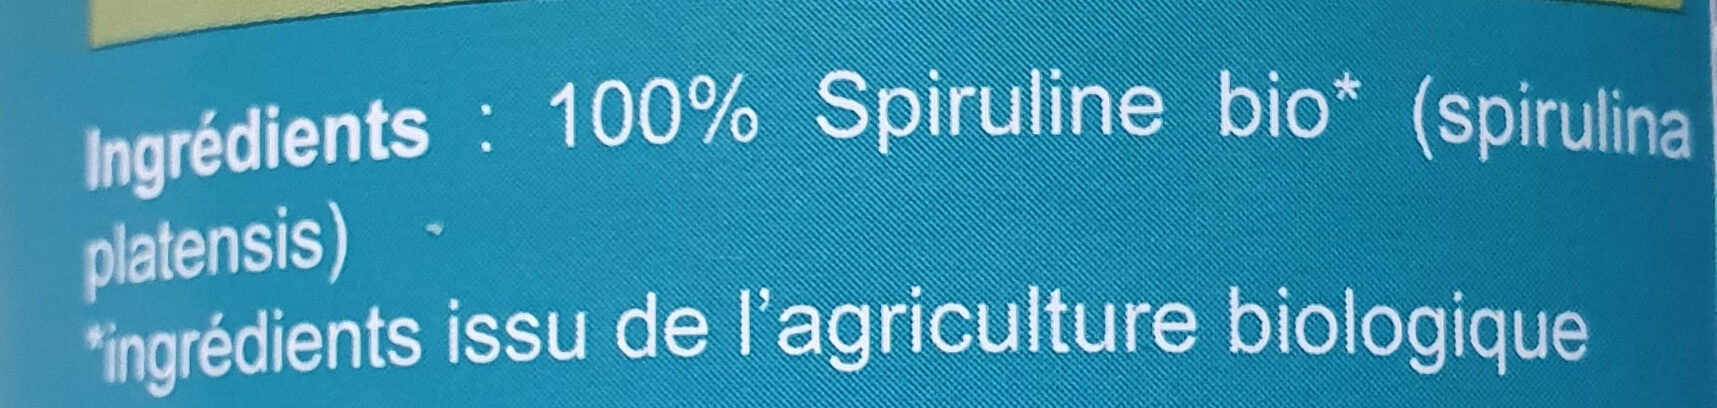 Spiruline bio - Ingredients - fr